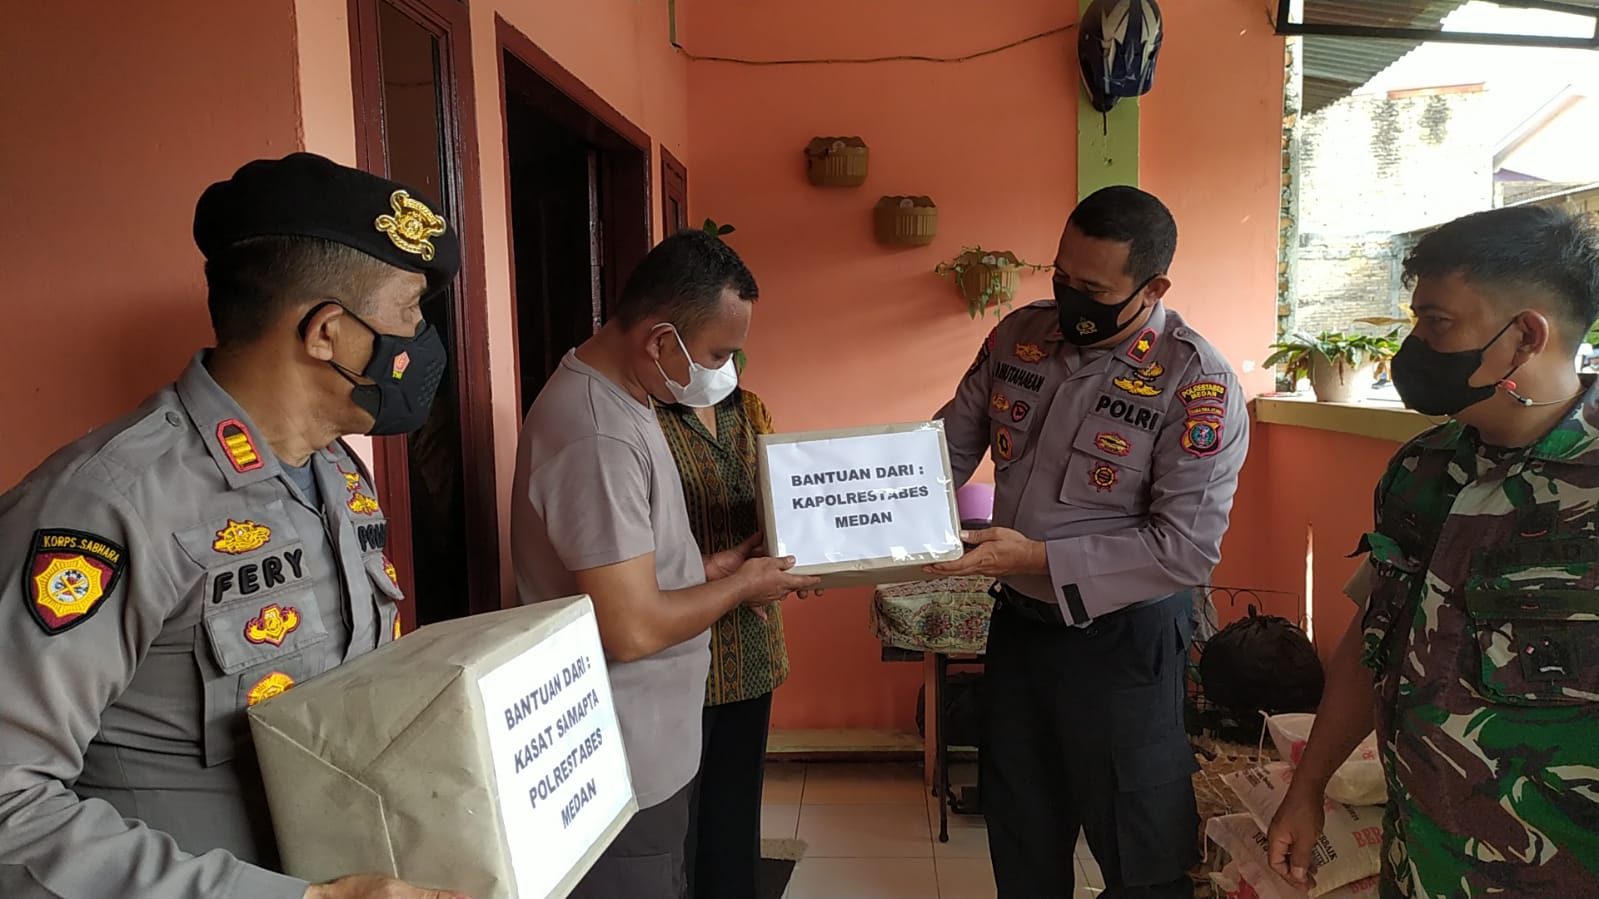 Kapolrestabes Medan Bantu Anggota Terkena Bencana Puting Beliung